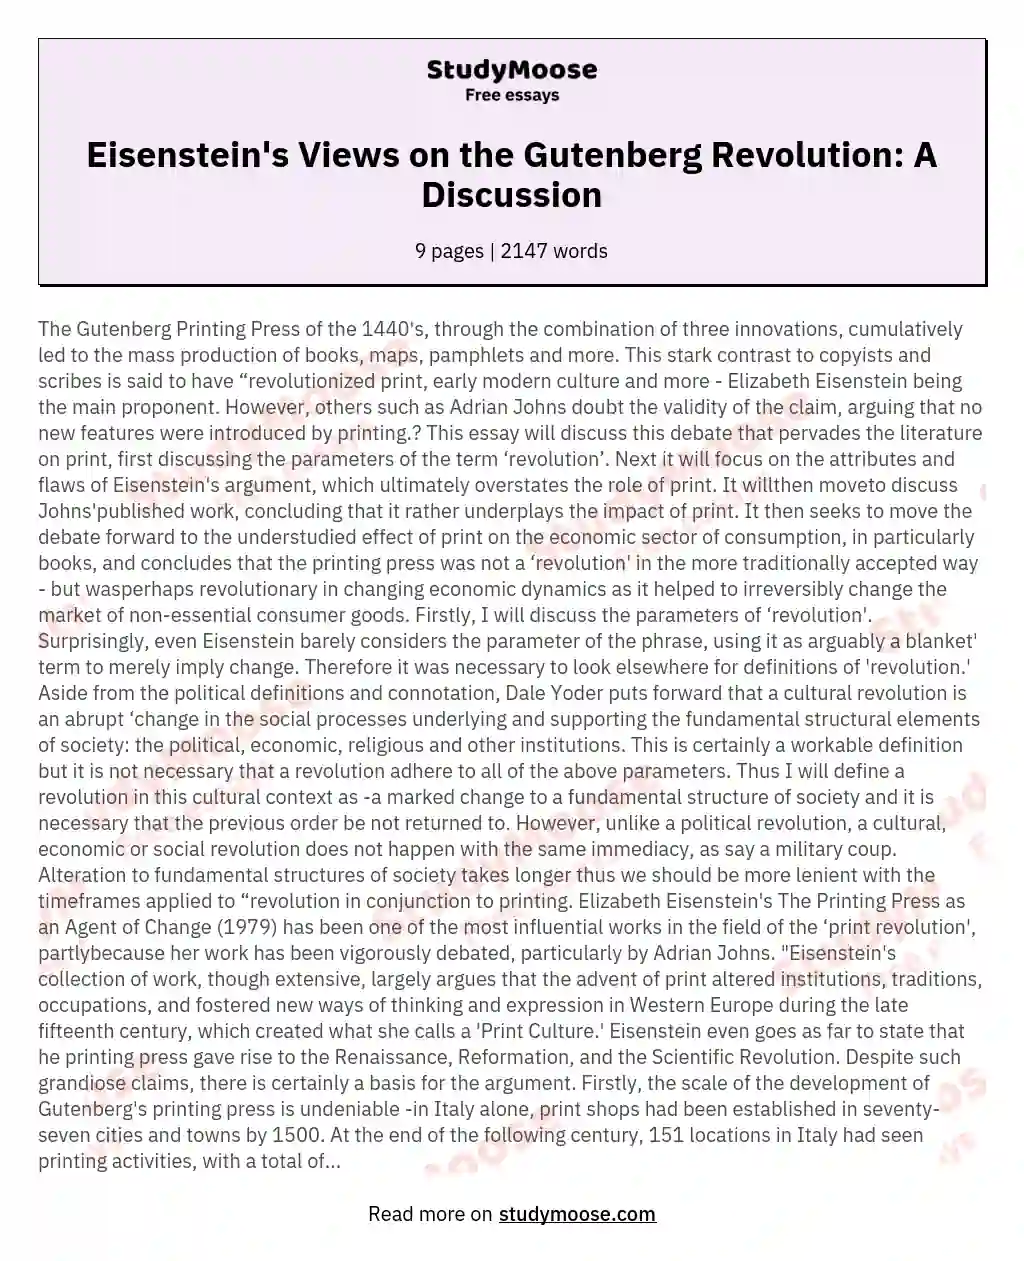 Eisenstein's Views on the Gutenberg Revolution: A Discussion essay